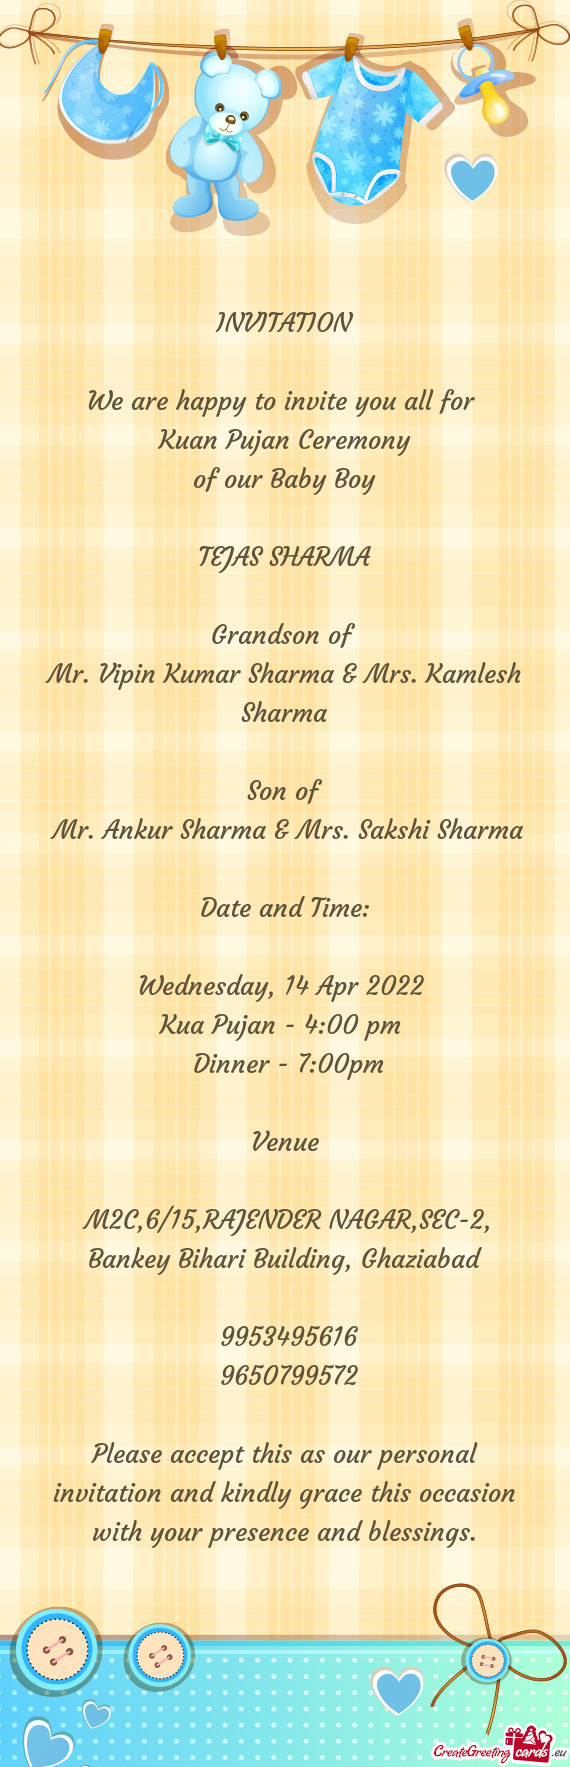 Mr. Ankur Sharma & Mrs. Sakshi Sharma